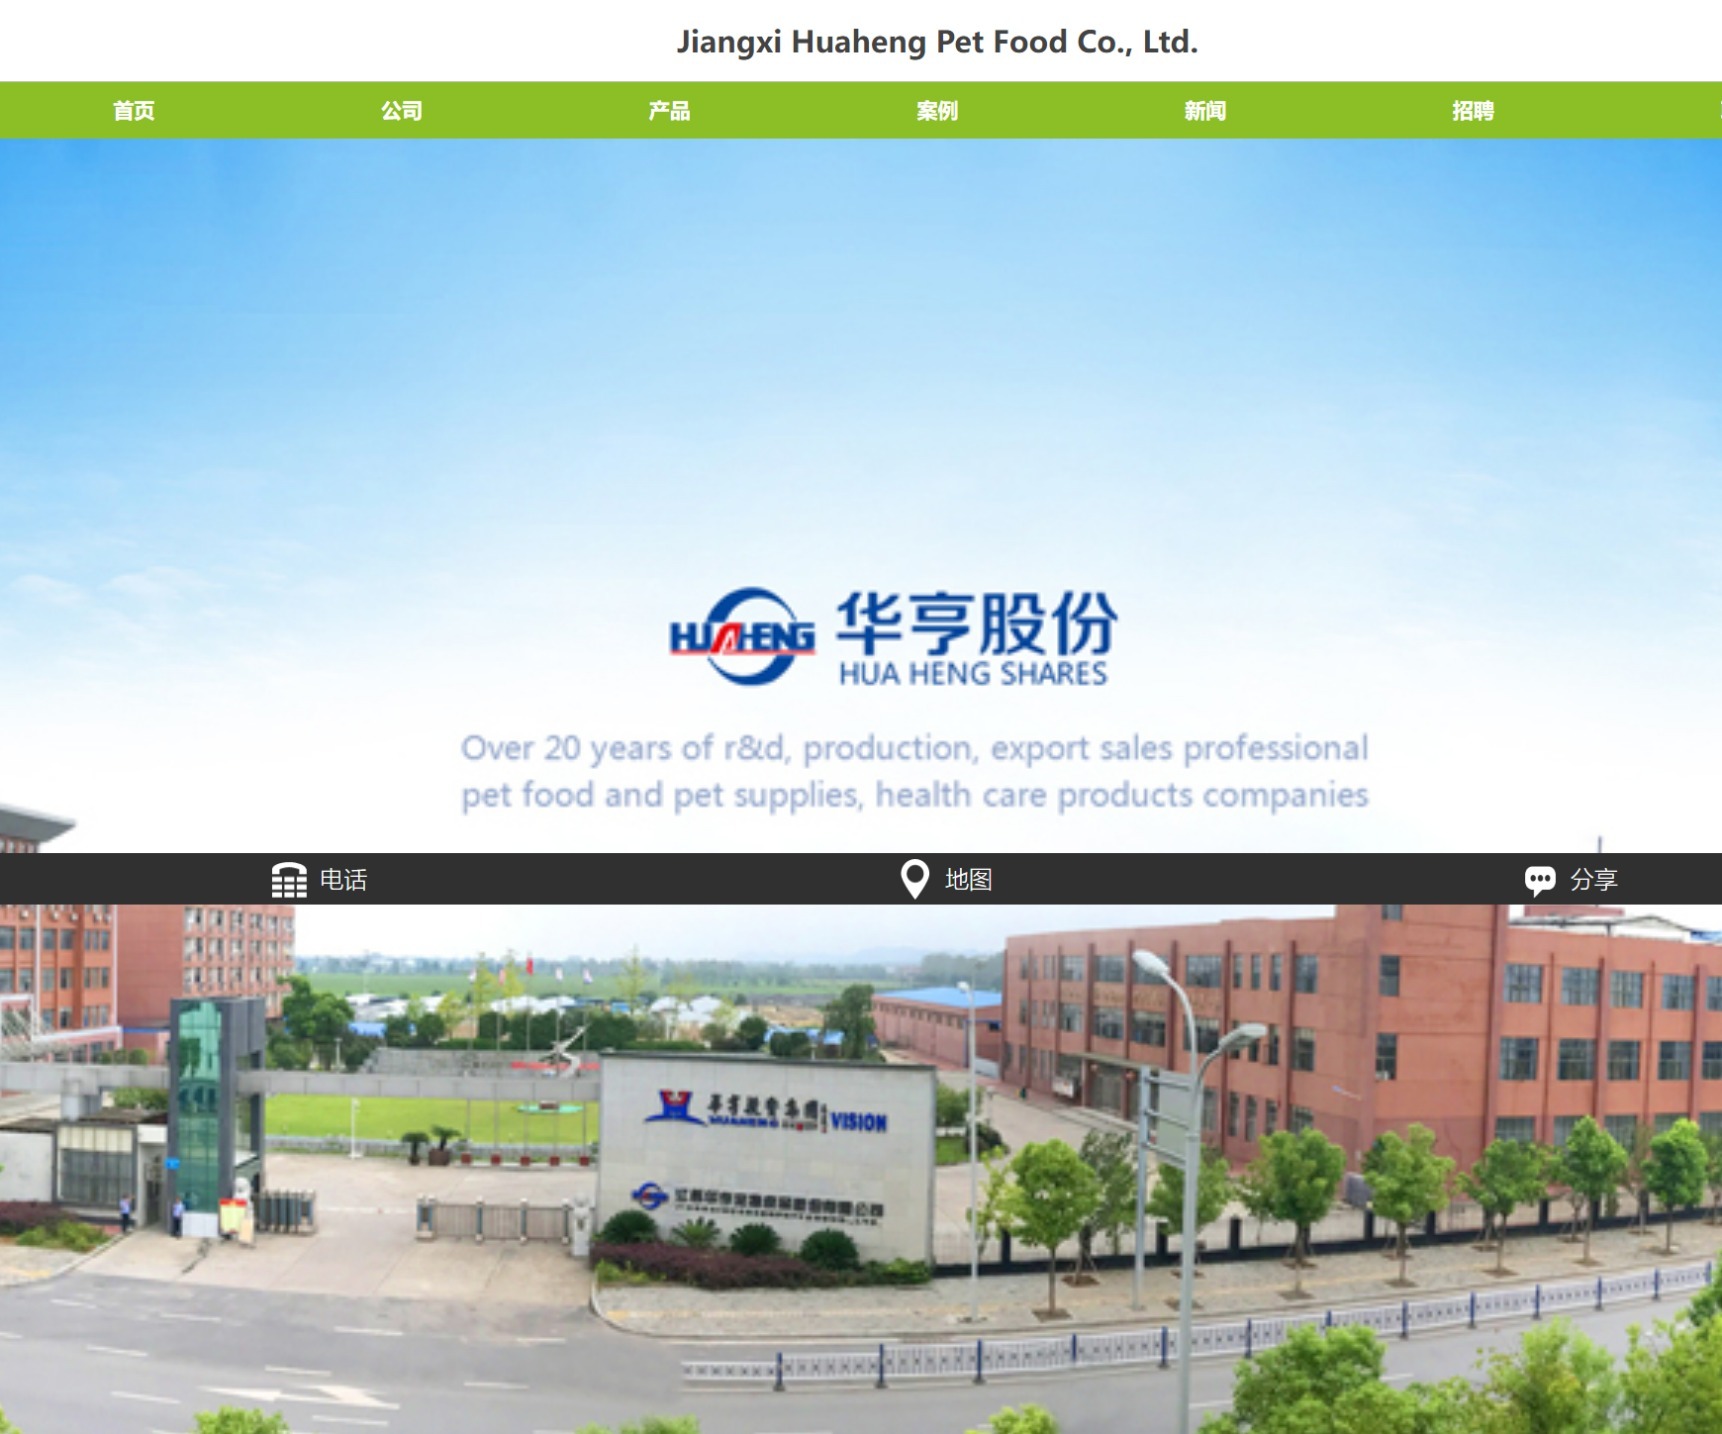 Jiangxi Huaheng Pet Food Co., Ltd website